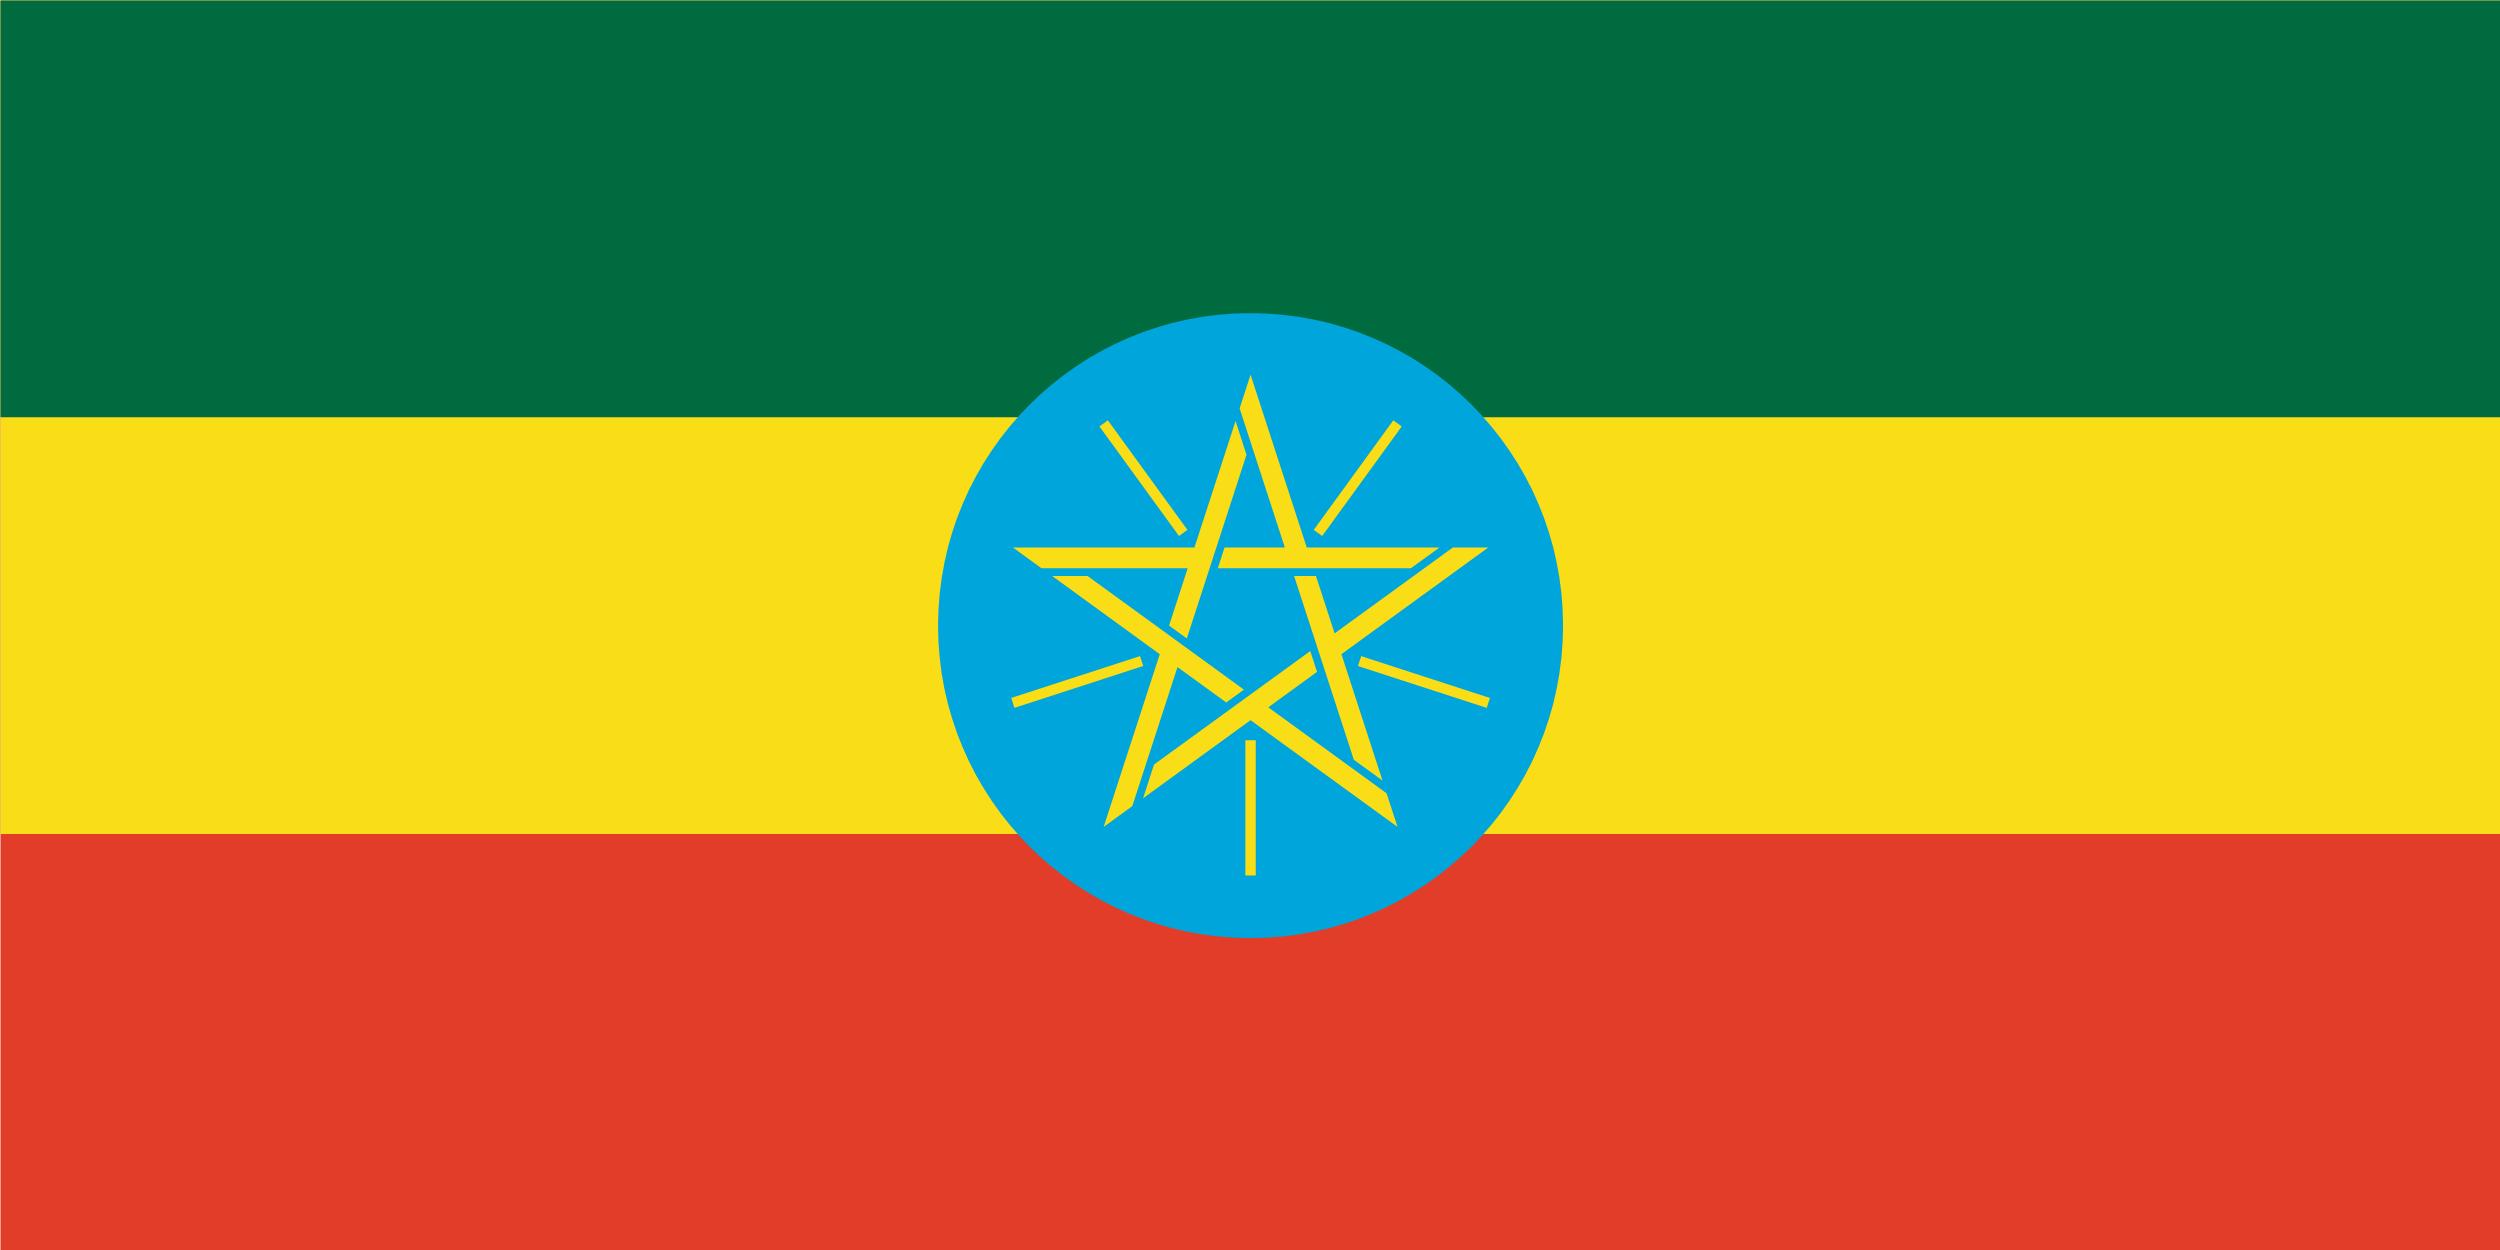 Governo da Etiópia aceita delimitação da fronteira com Eritreia